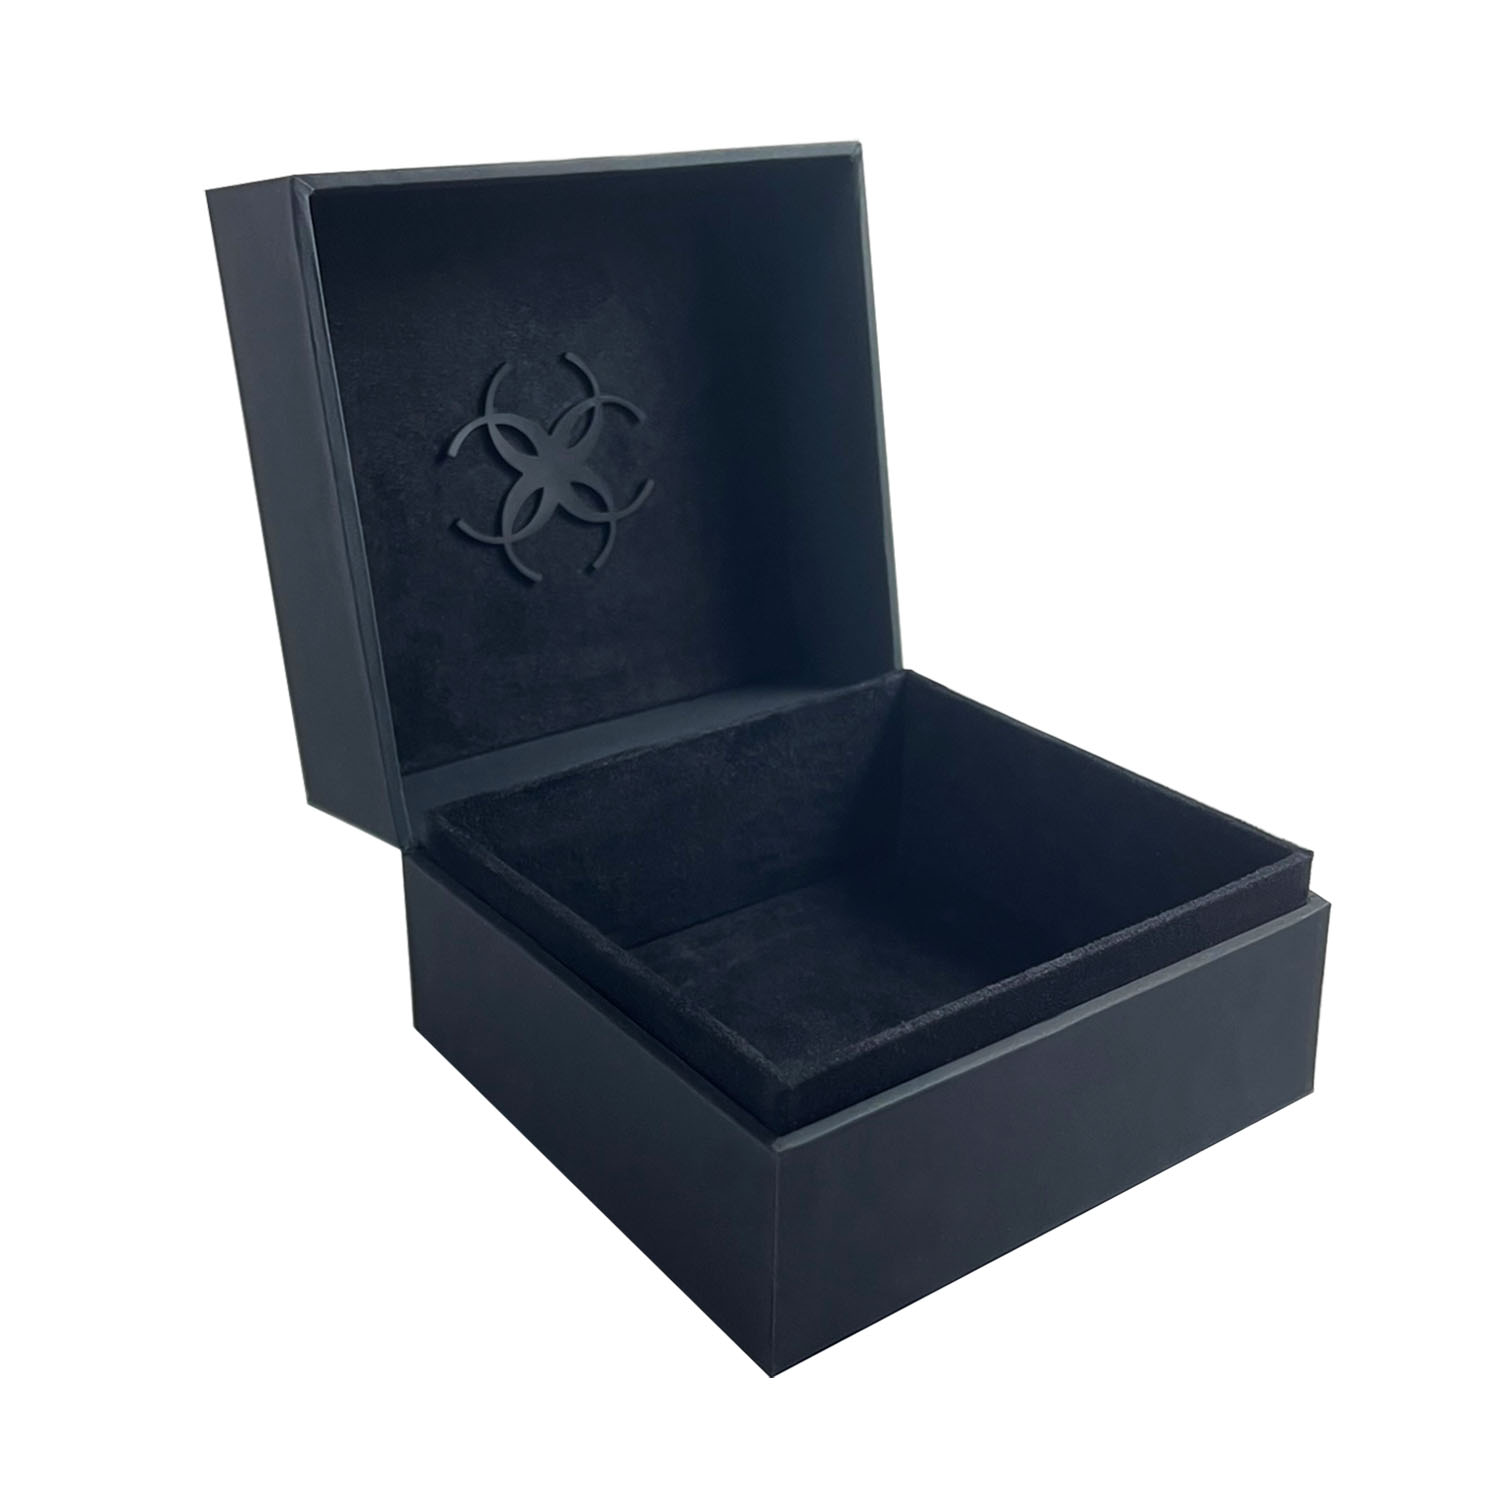 Luxury custom logo jewelry box